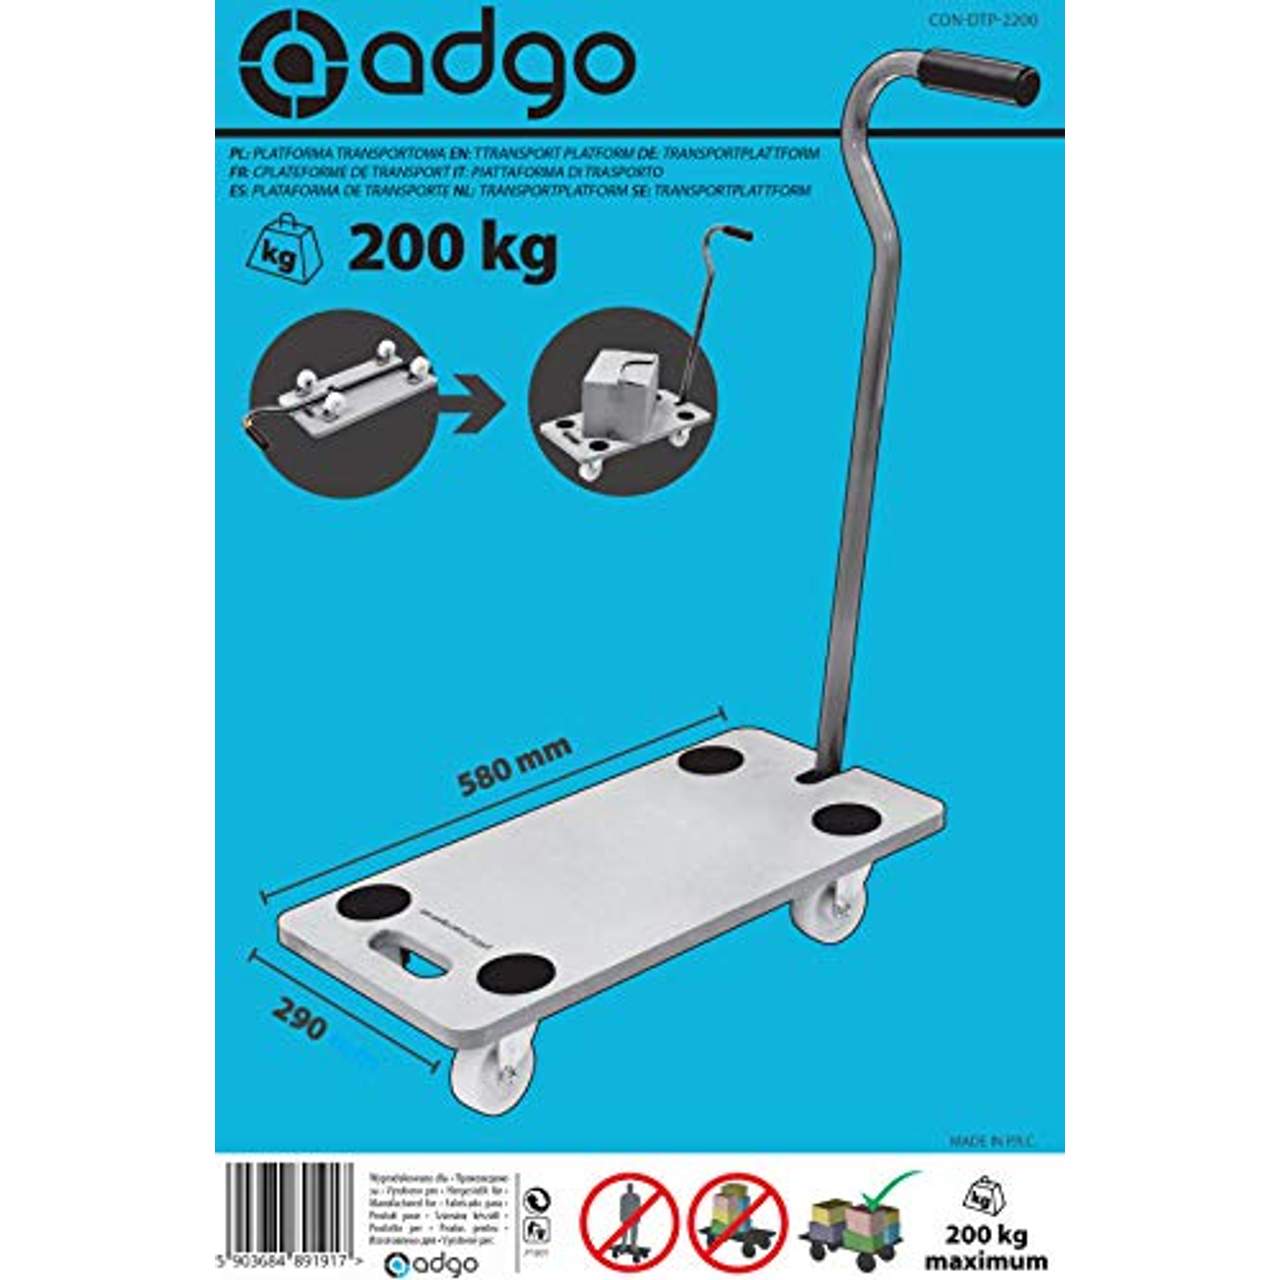 ADGO Transportplattform Rechteckig mit Deichsel Möbelroller Rollbrett Transportroller Transporter Möbelhund